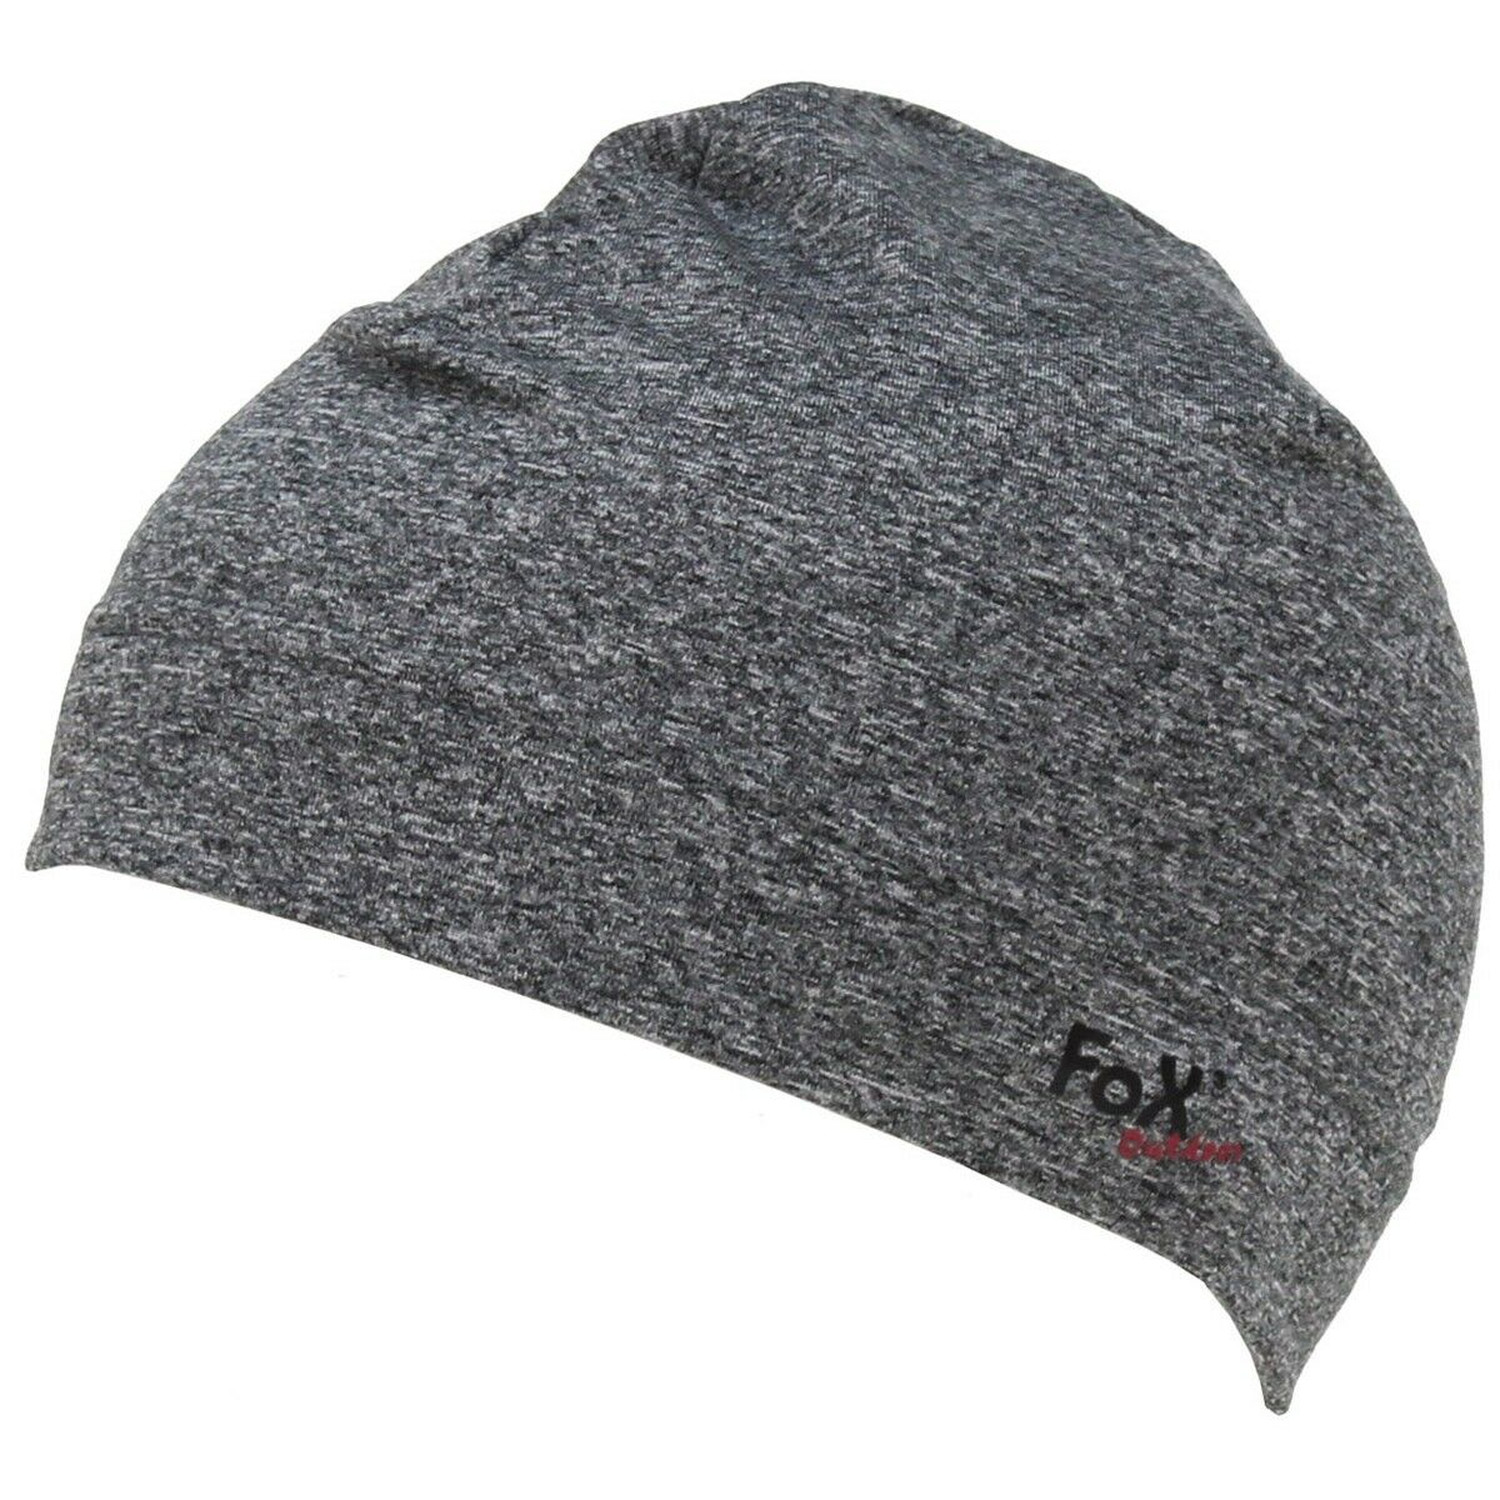 Mütze Run von FoX Outdoor in Grau, Größe S / M